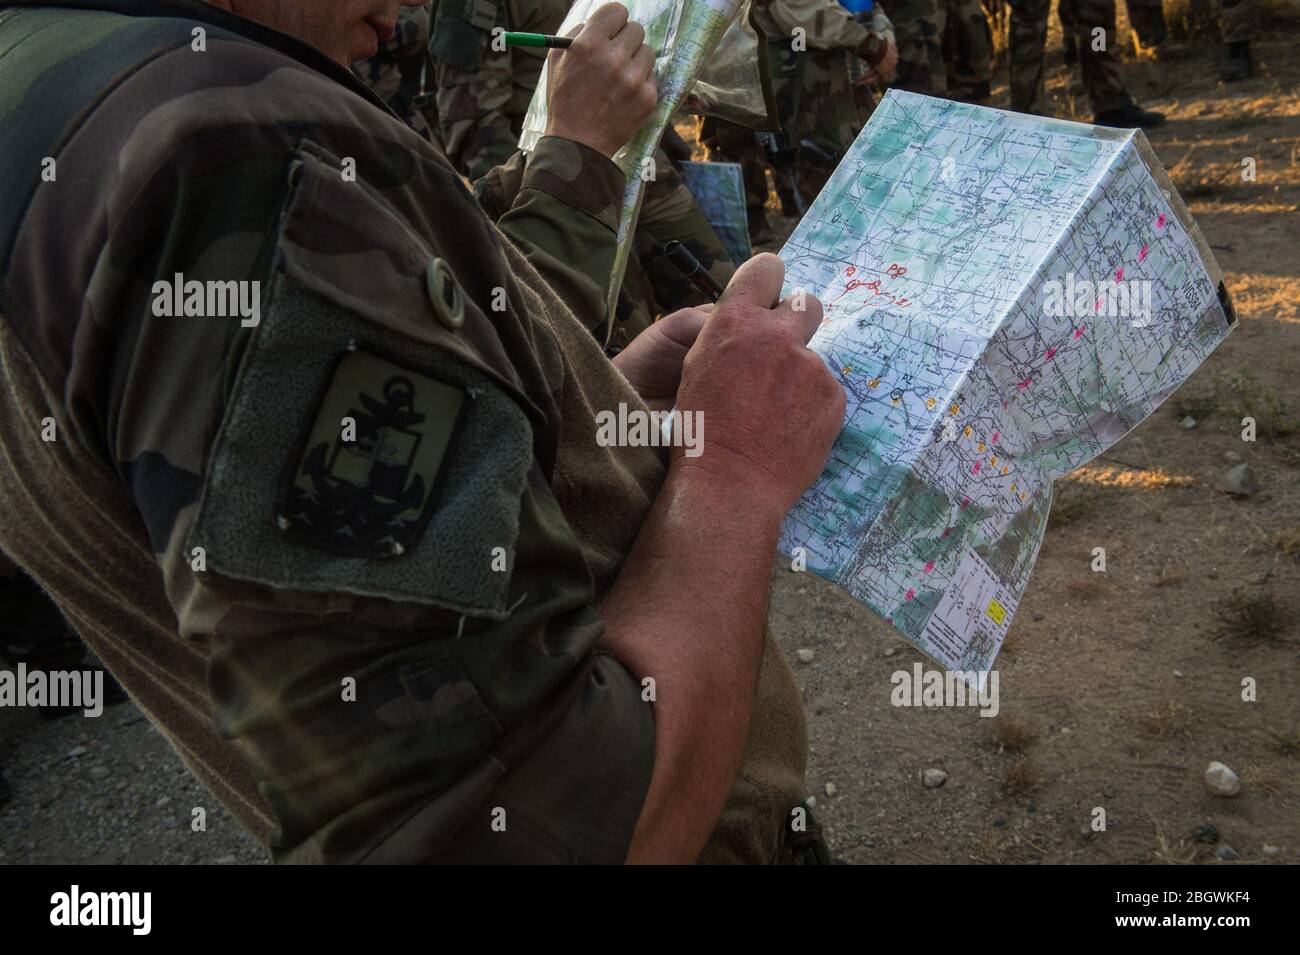 DRAGUIGNAN, FRANCE - JUILLET 19 : deux soldats écrivent sur des cartes pendant la préparation au camp de Canjuers de soldats français qui partent pour quatre mois de O Banque D'Images